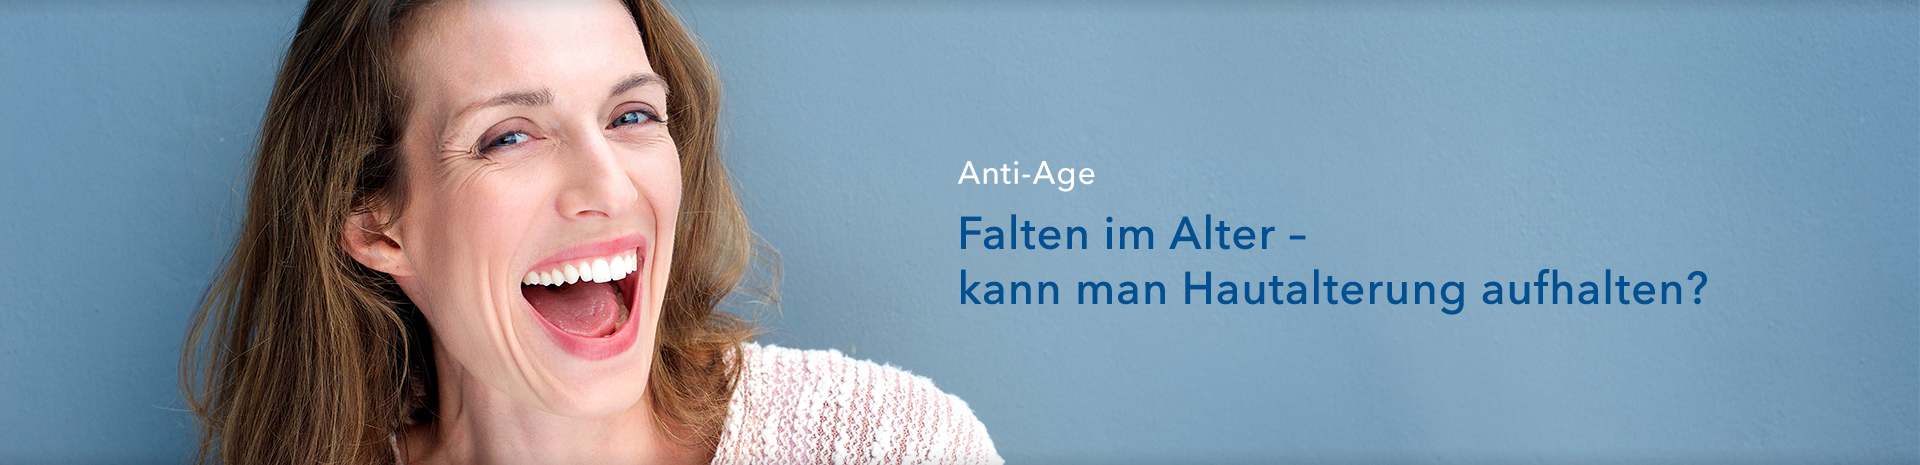 Ratgeber zum Thema Anti-Age